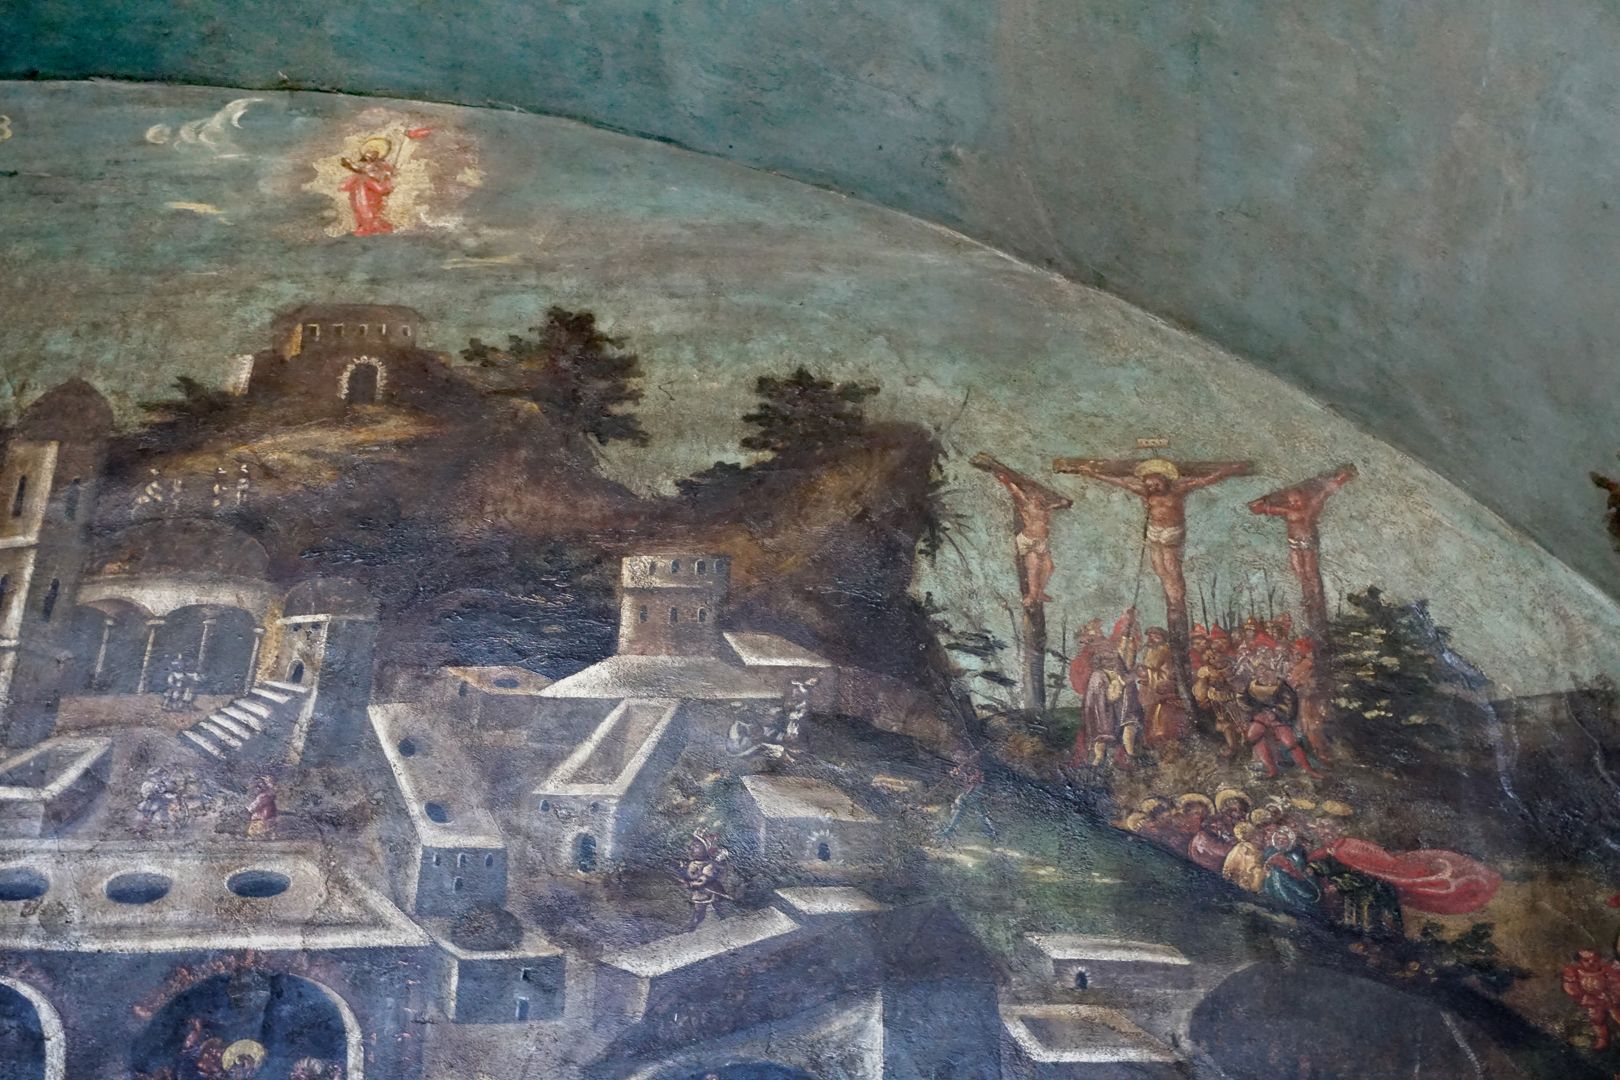 Wandmalerei der Grablegung obere rechte Ecke des Hauptfeldes der Nische, Kreuzigungsgruppe mit Lanzenstich, davor die zusammengesunkene Maria, von Johannes gestützt. Links oben: Christi Himmelfahrt